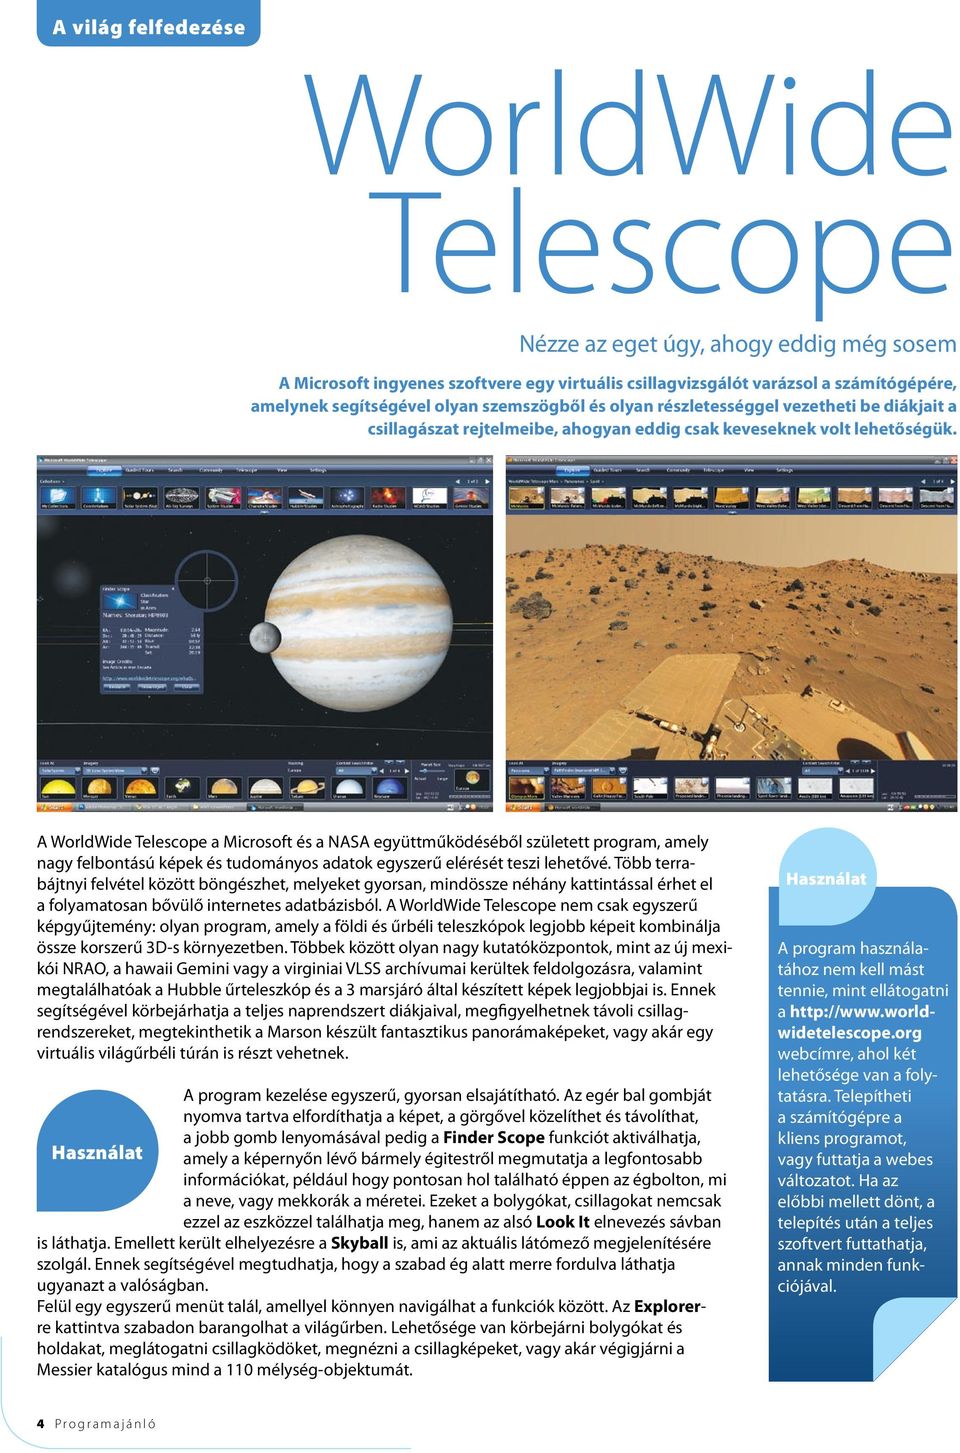 A WorldWide Telescope a Microsoft és a NASA együttműködéséből született program, amely nagy felbontású képek és tudományos adatok egyszerű elérését teszi lehetővé.